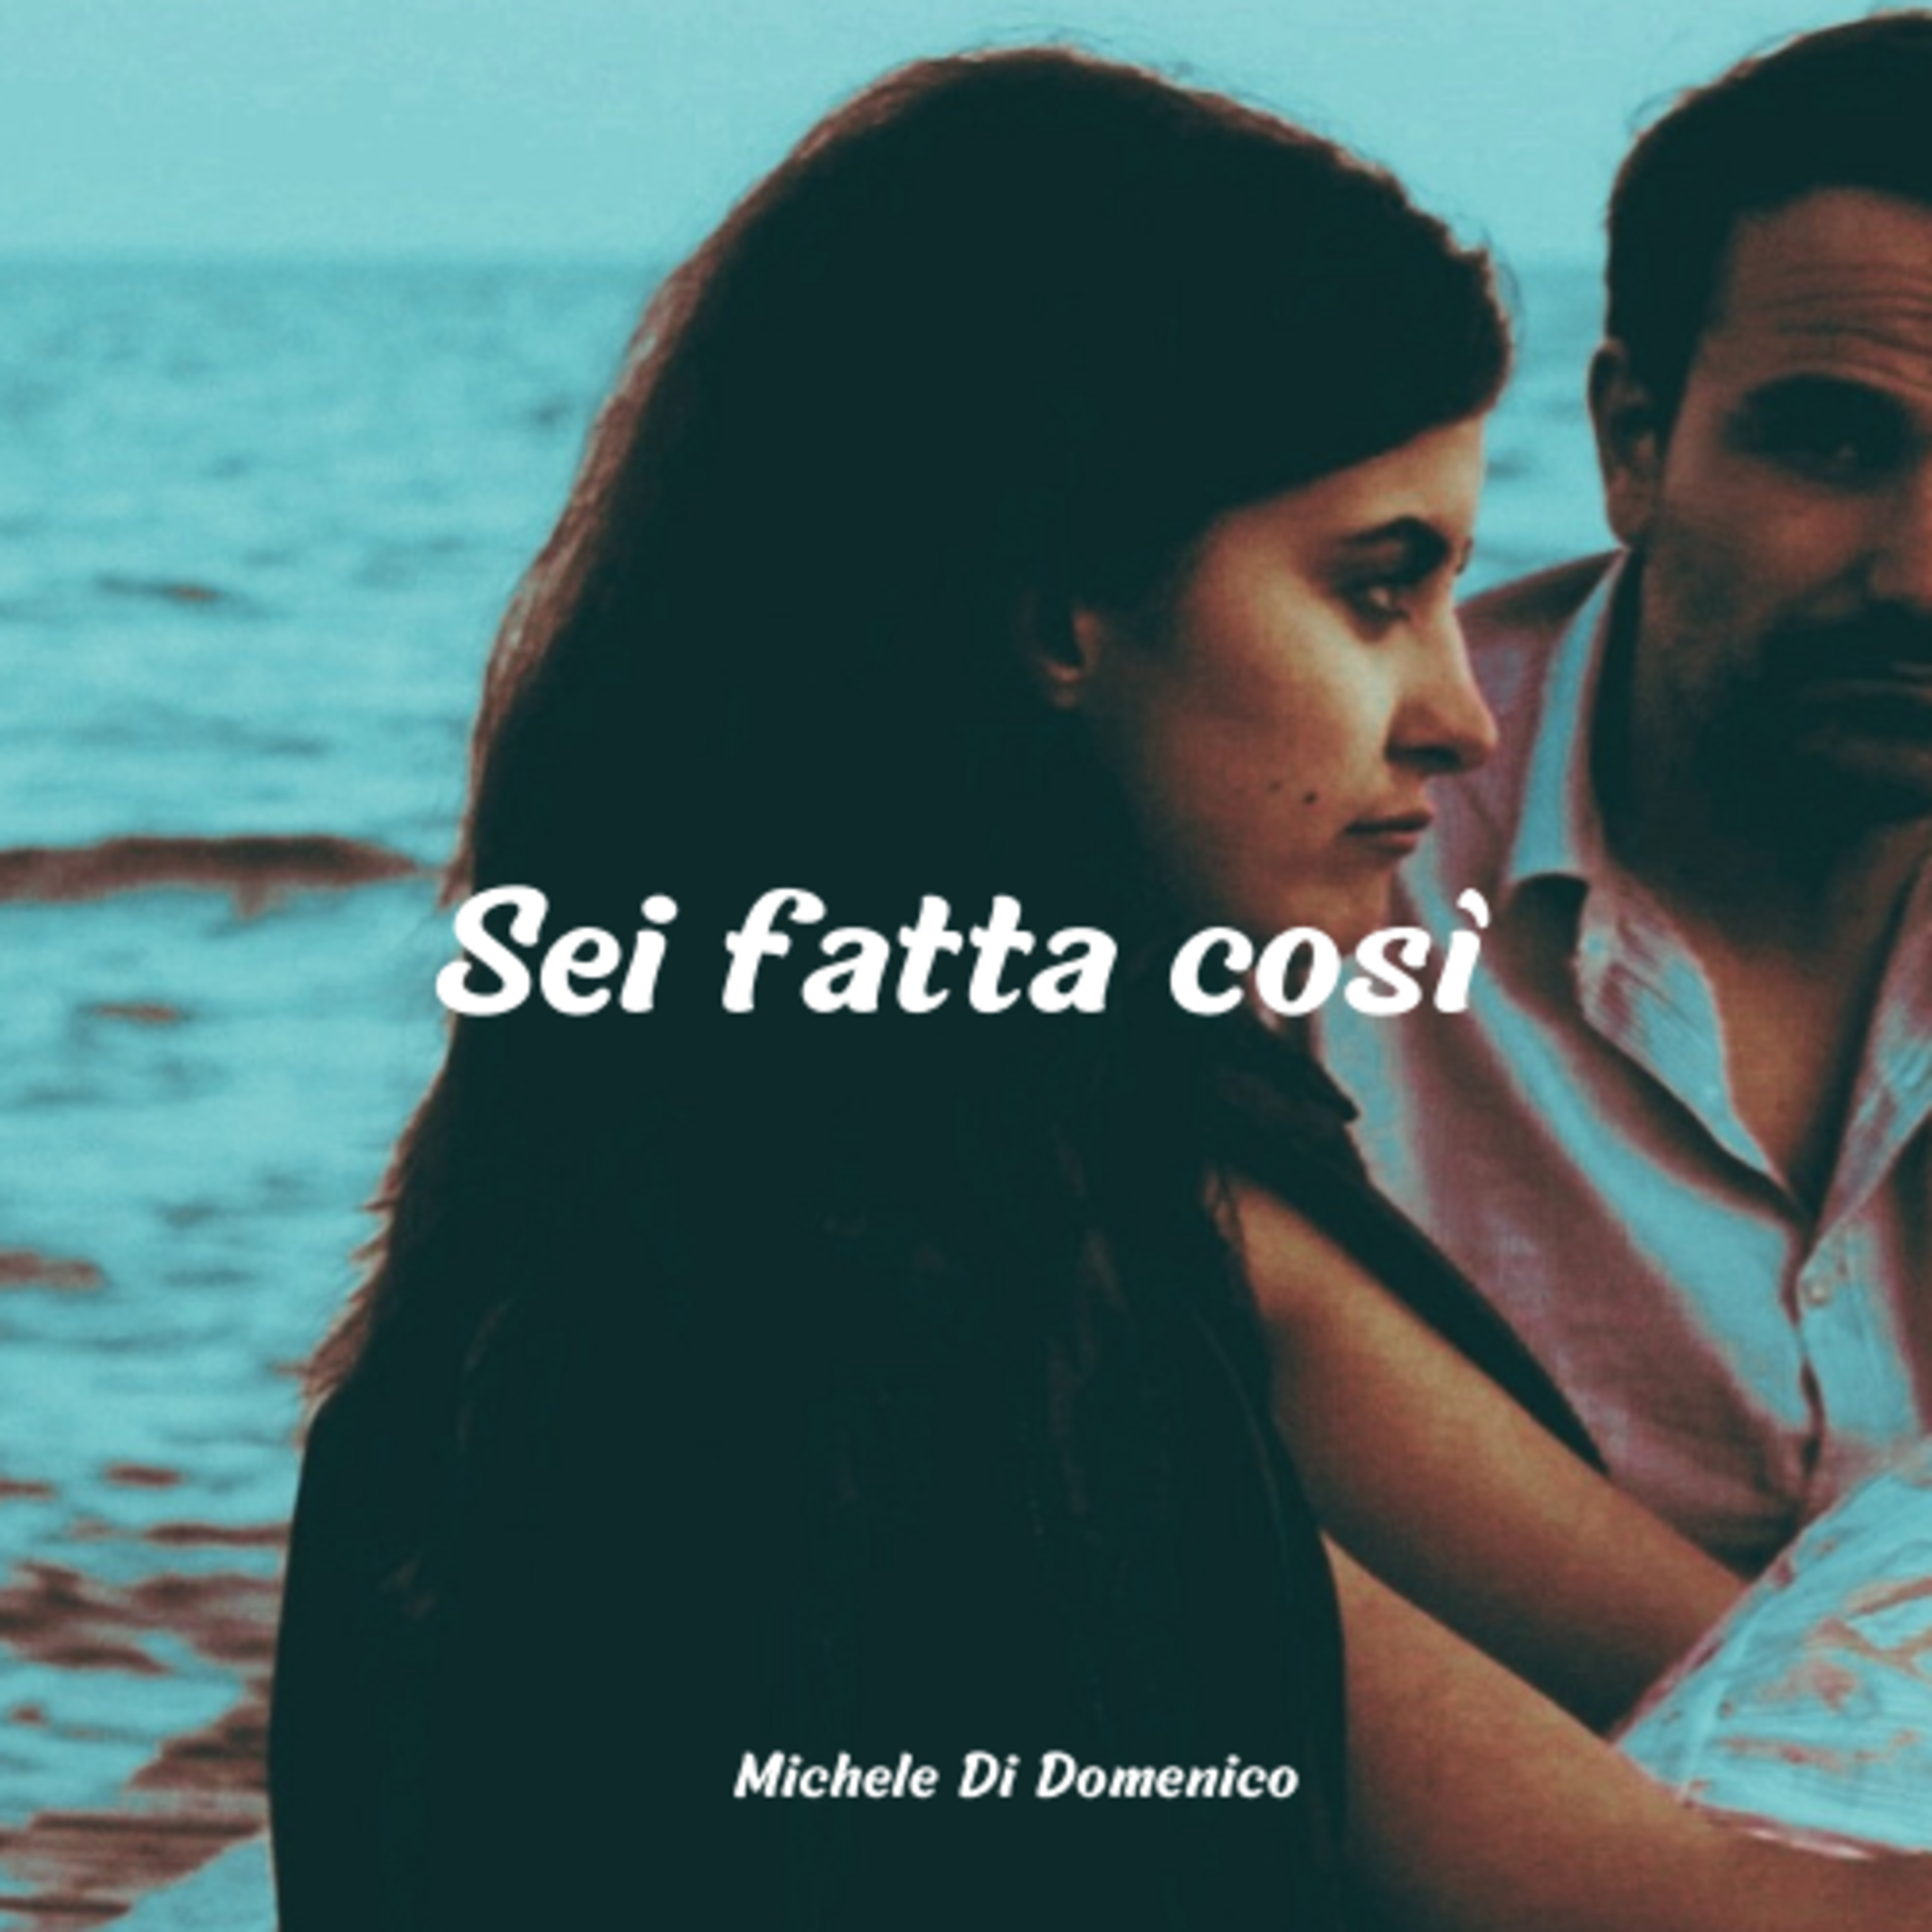 Michele Di Domenico presenta il suo nuovo singolo "Sei fatta così"